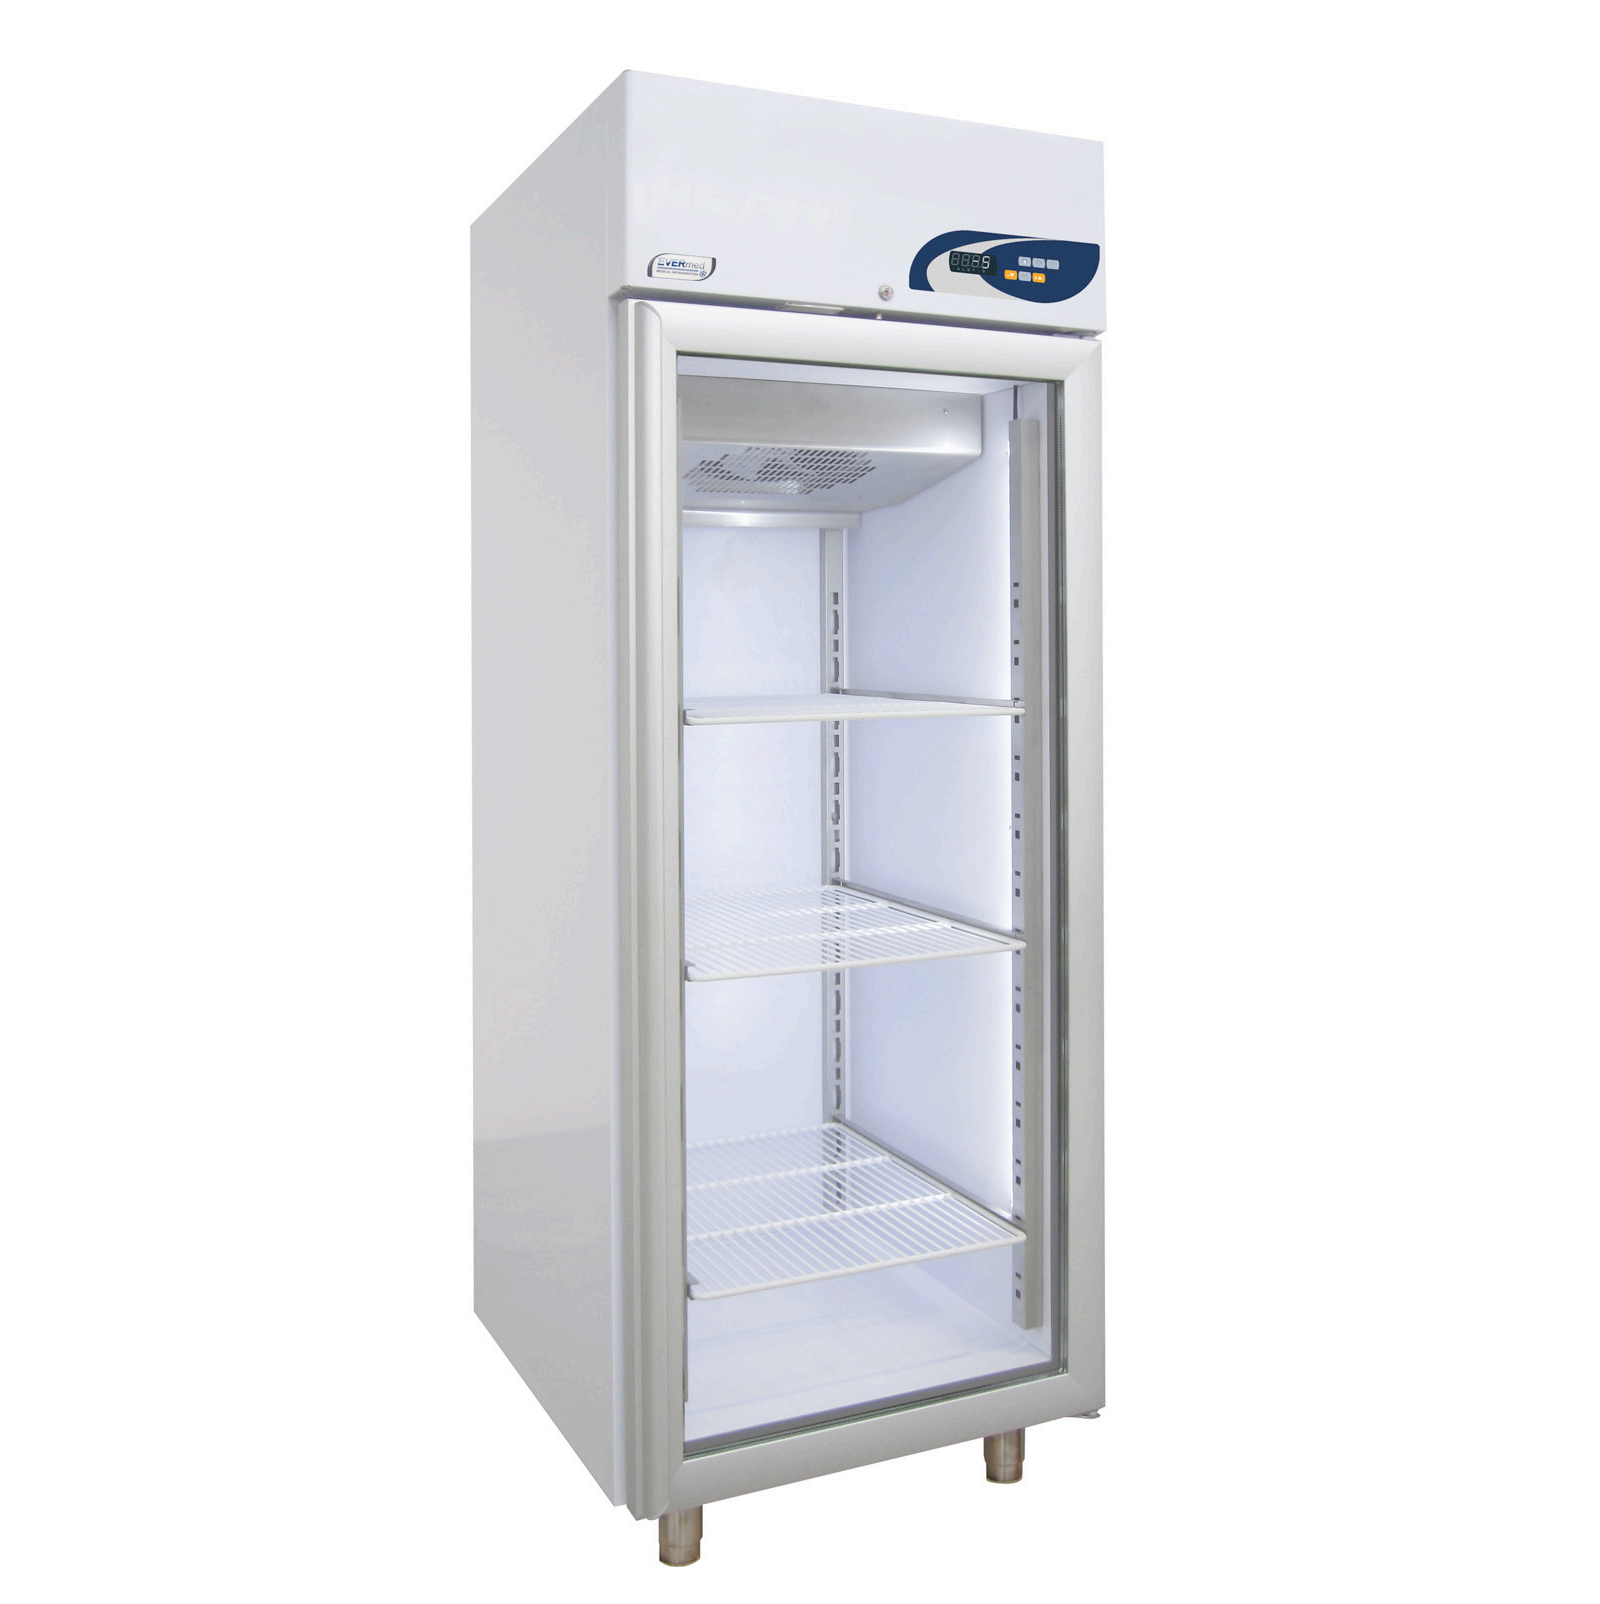 Tủ lạnh bảo quan mẫu MPR 625 +2°C to +15°C